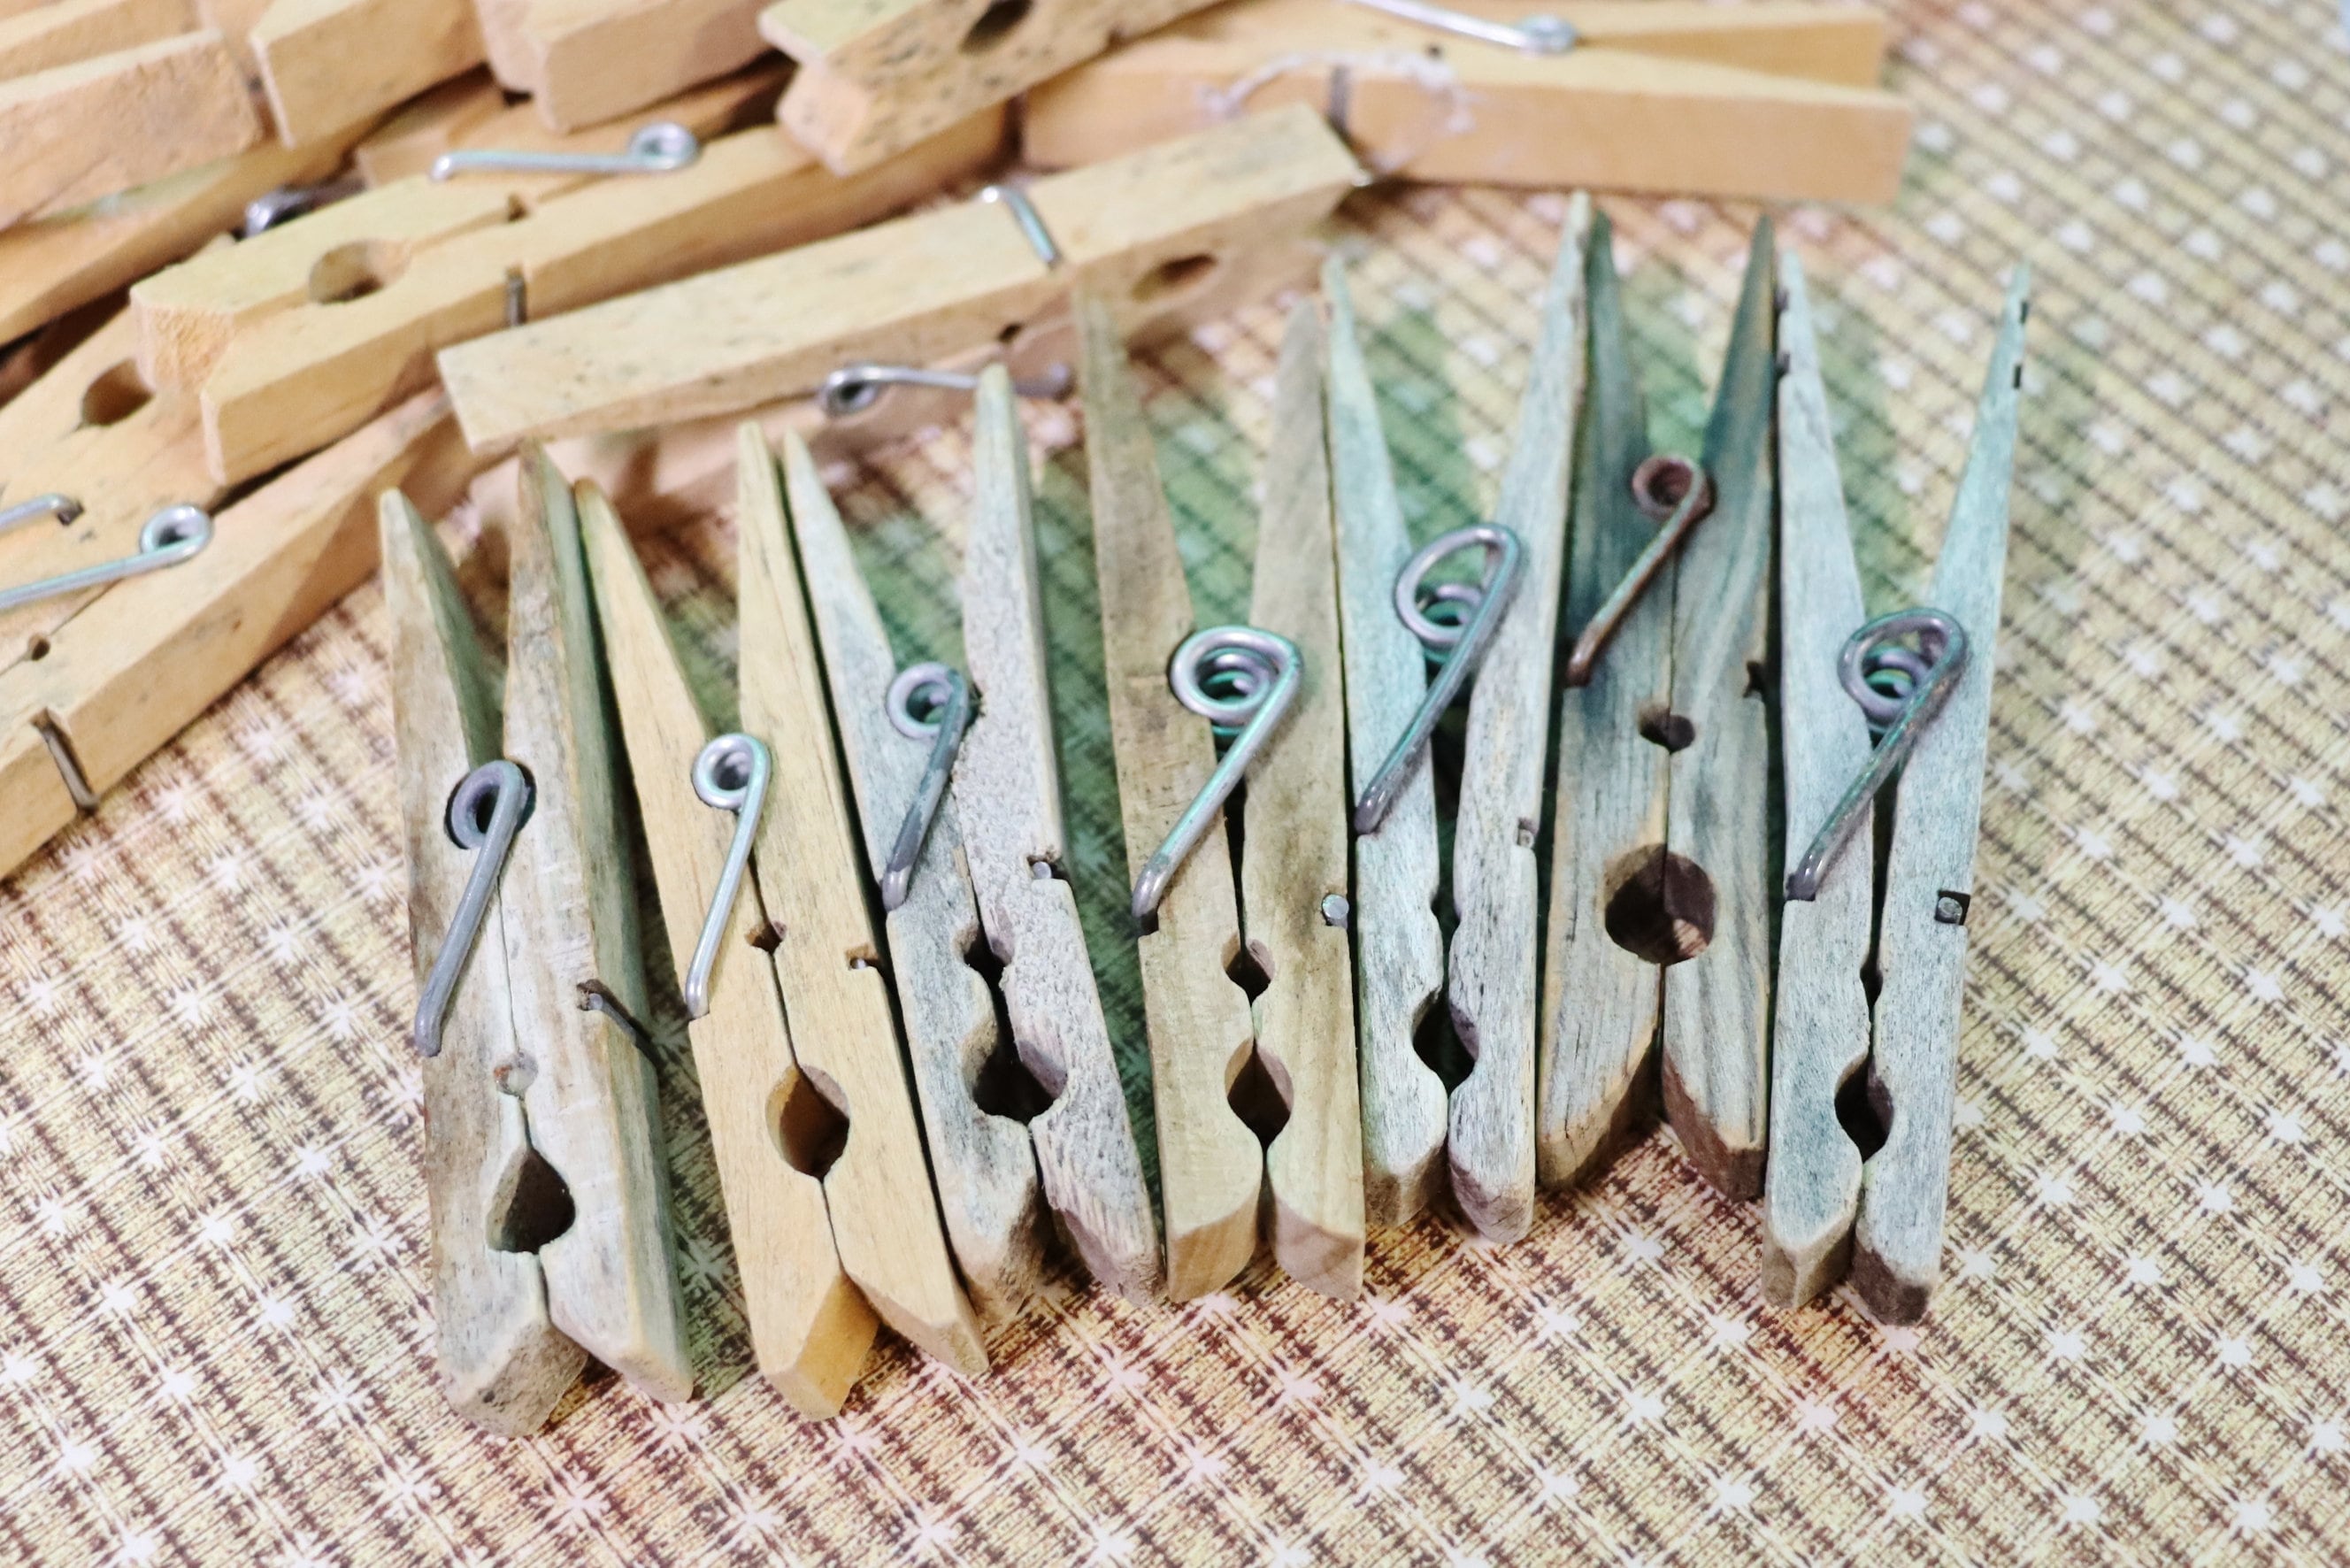 Wood Close Pins 